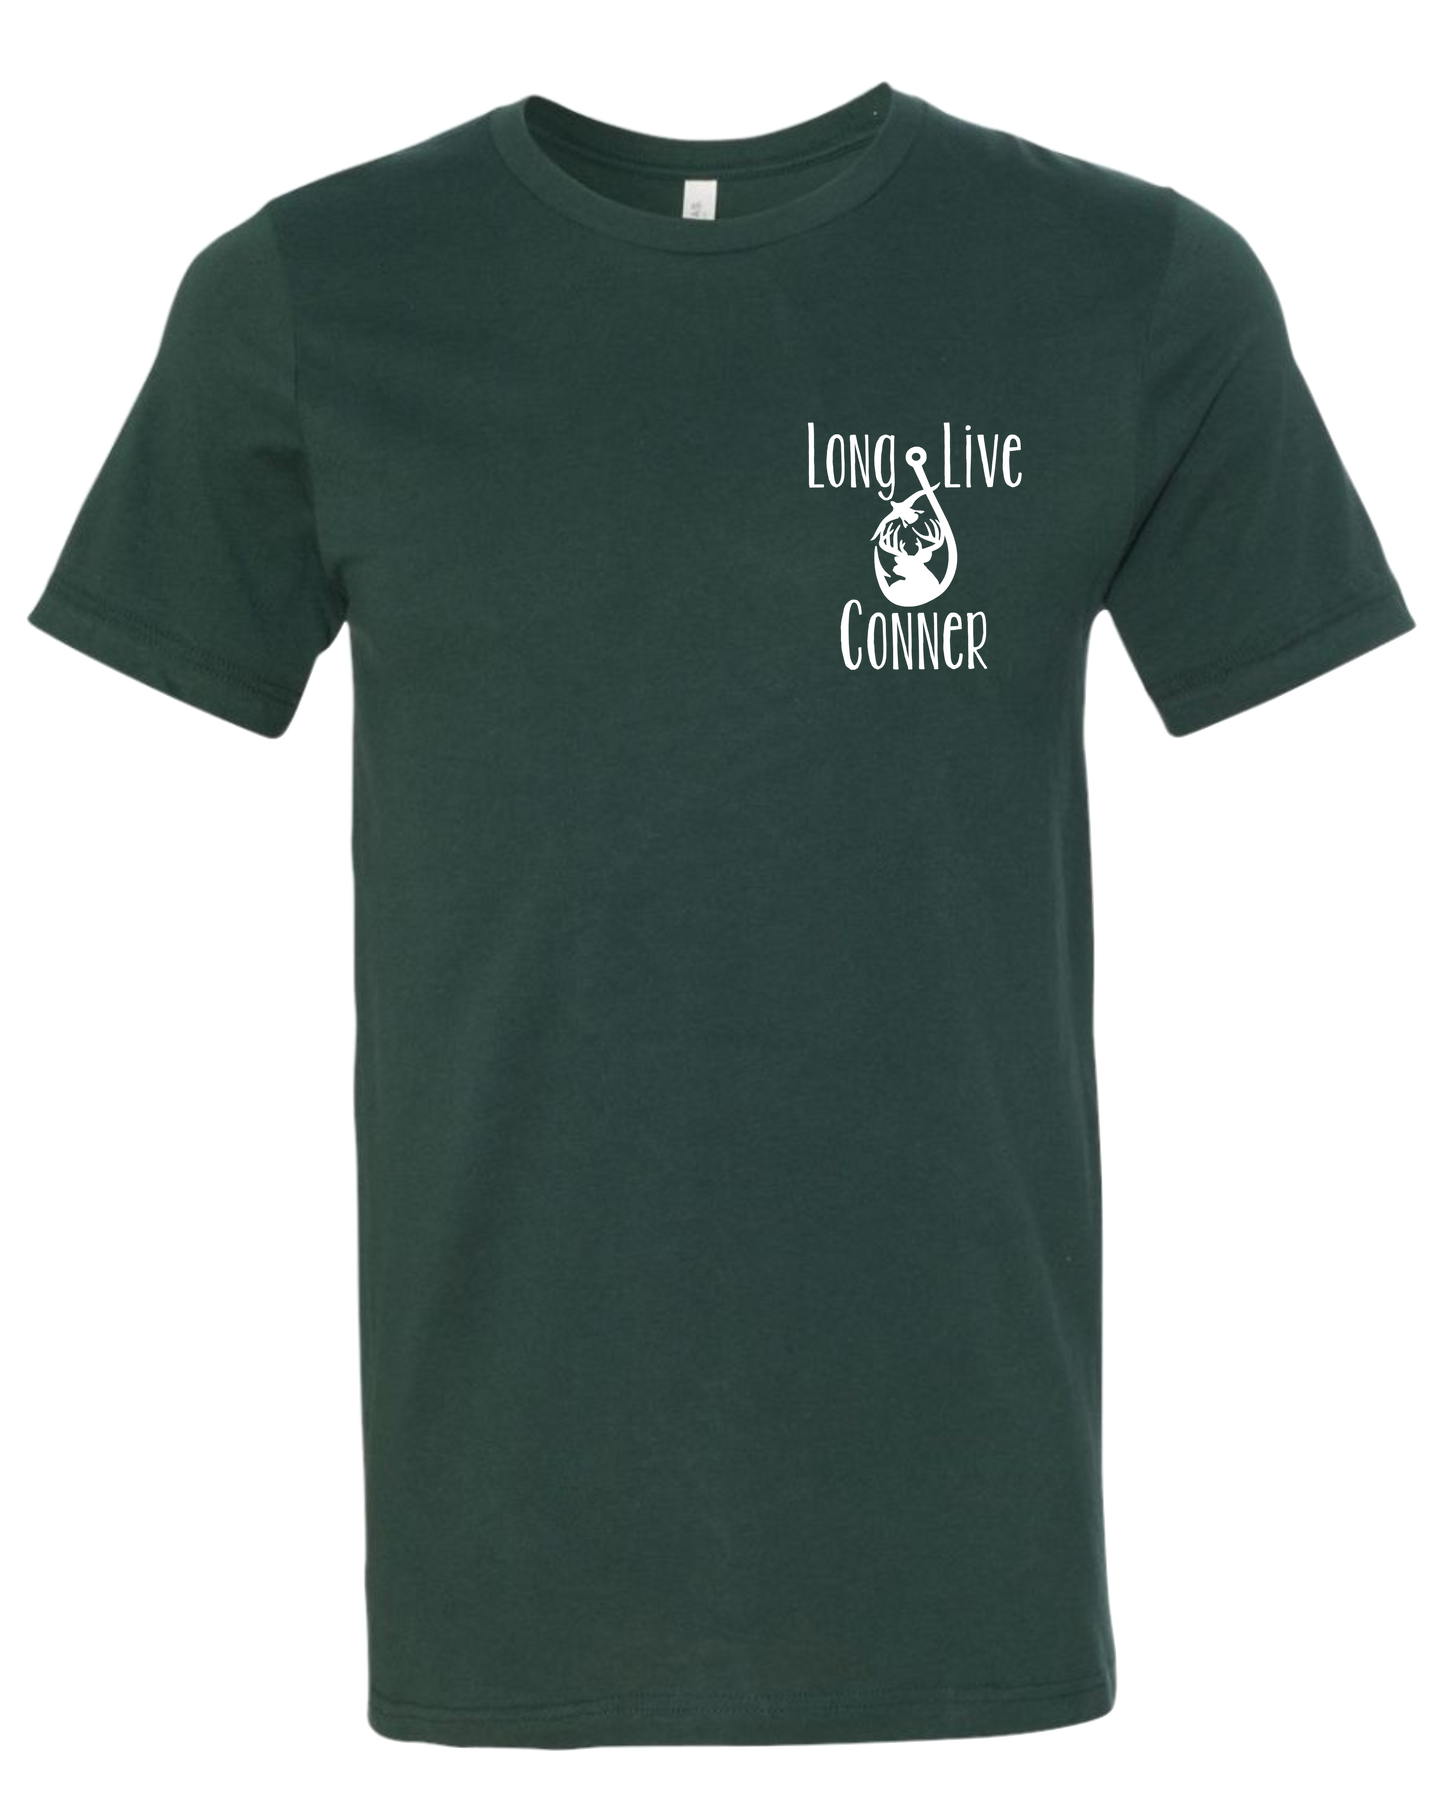 Long Live Conner - T-Shirt